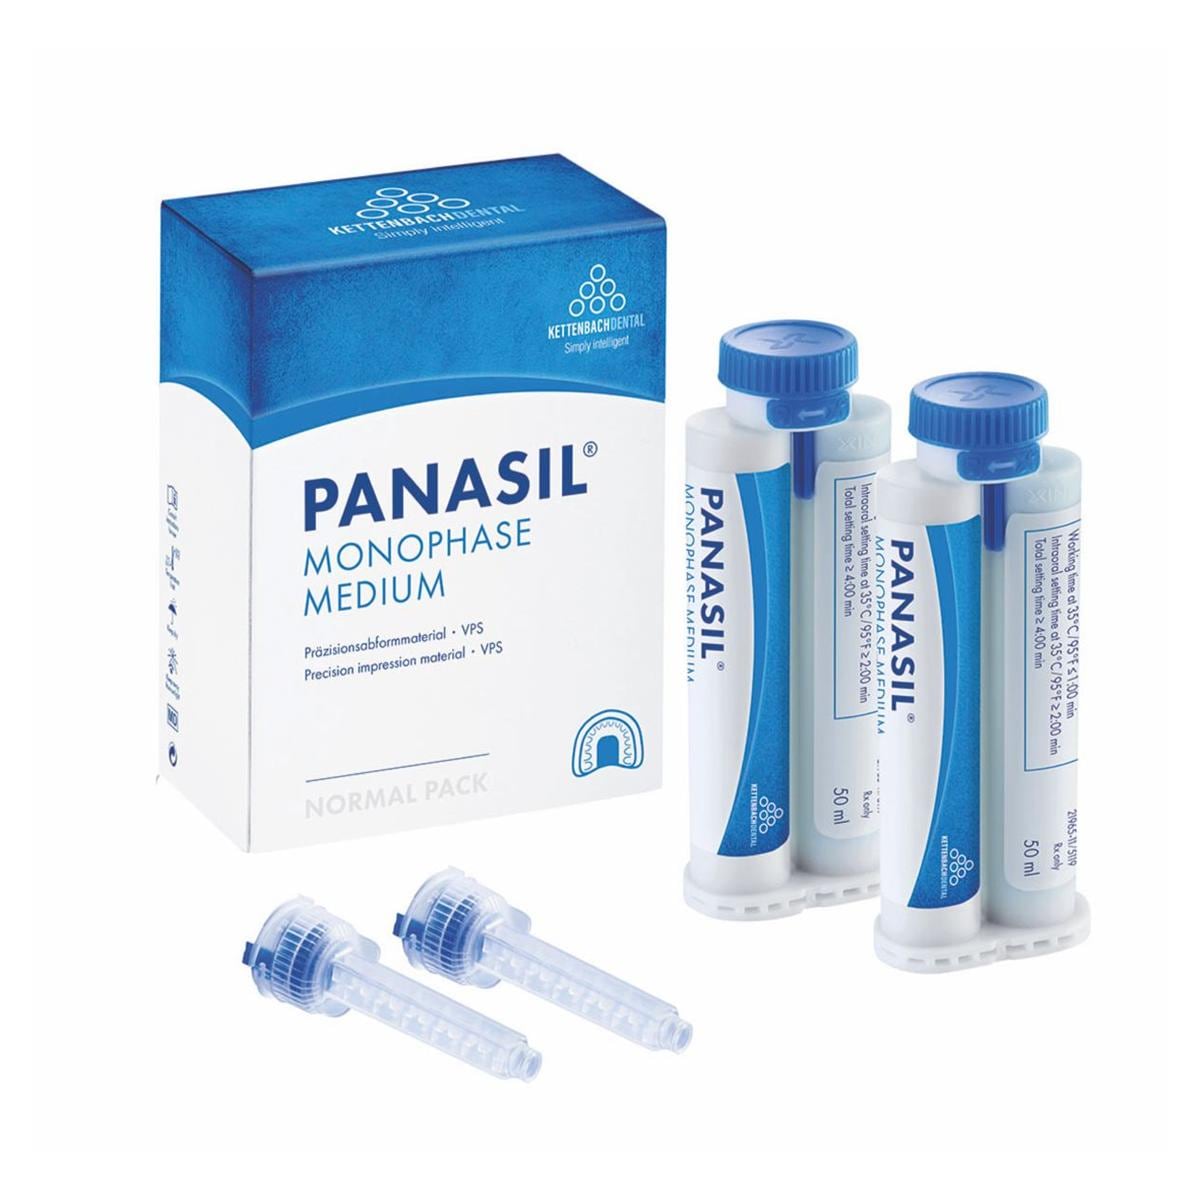 Panasil monophase Medium Normal pack